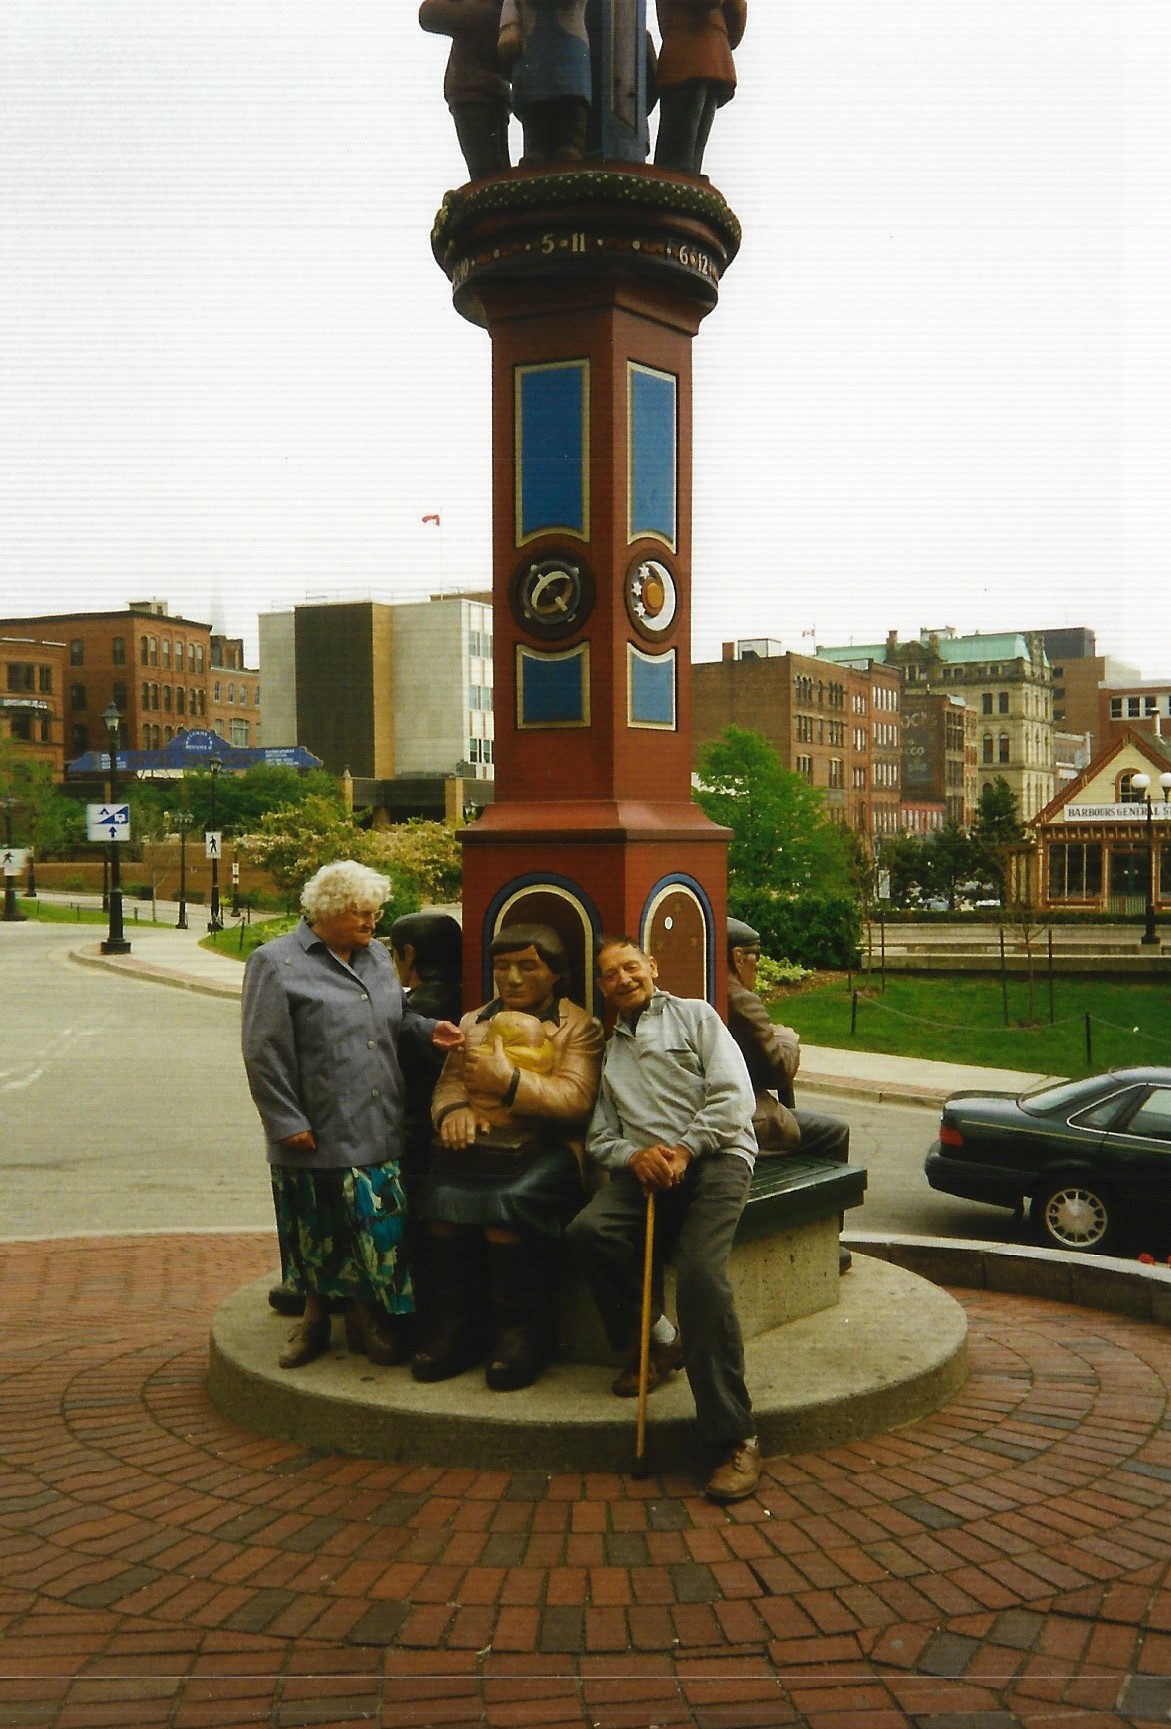 Reisgenoten voor het Inukshuk Monument